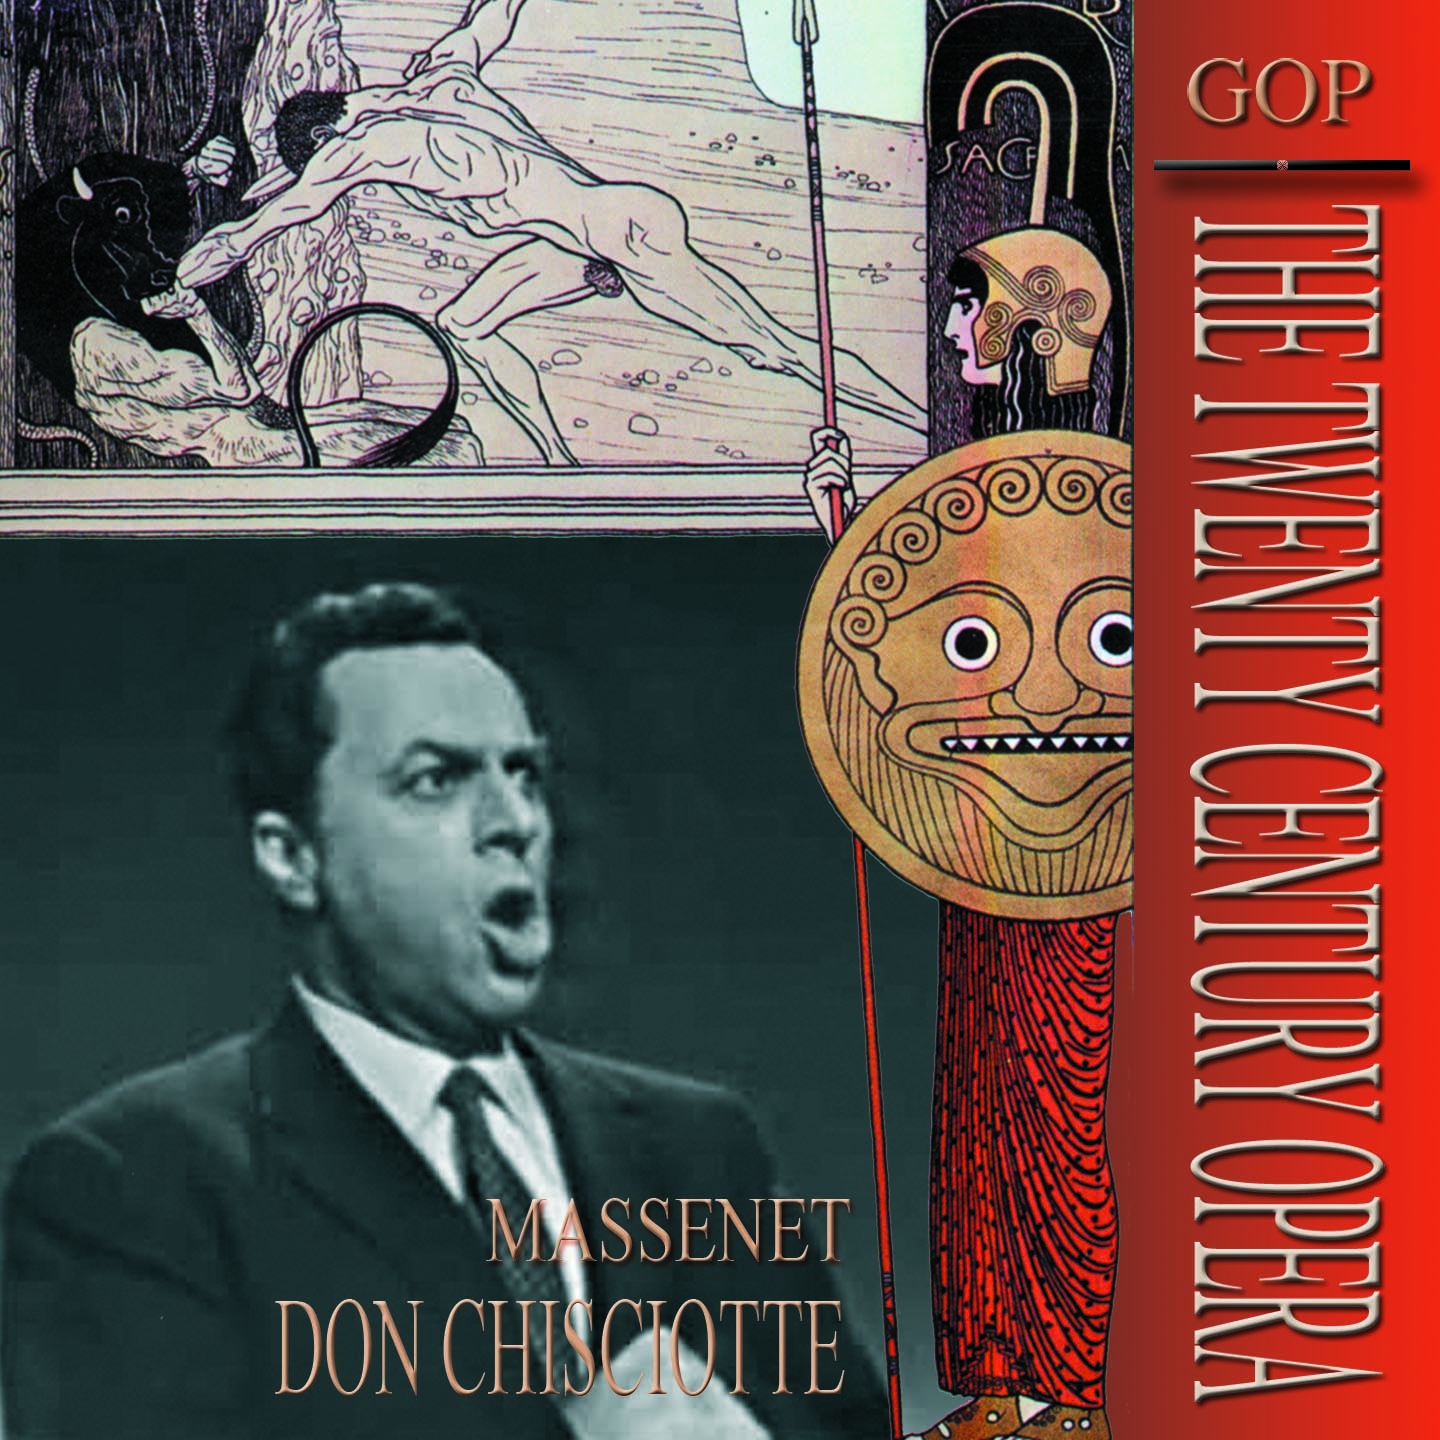 Don Chisciotte, Act II: "E' verso il tuo amor" (Don Chisciotte, Sancio)